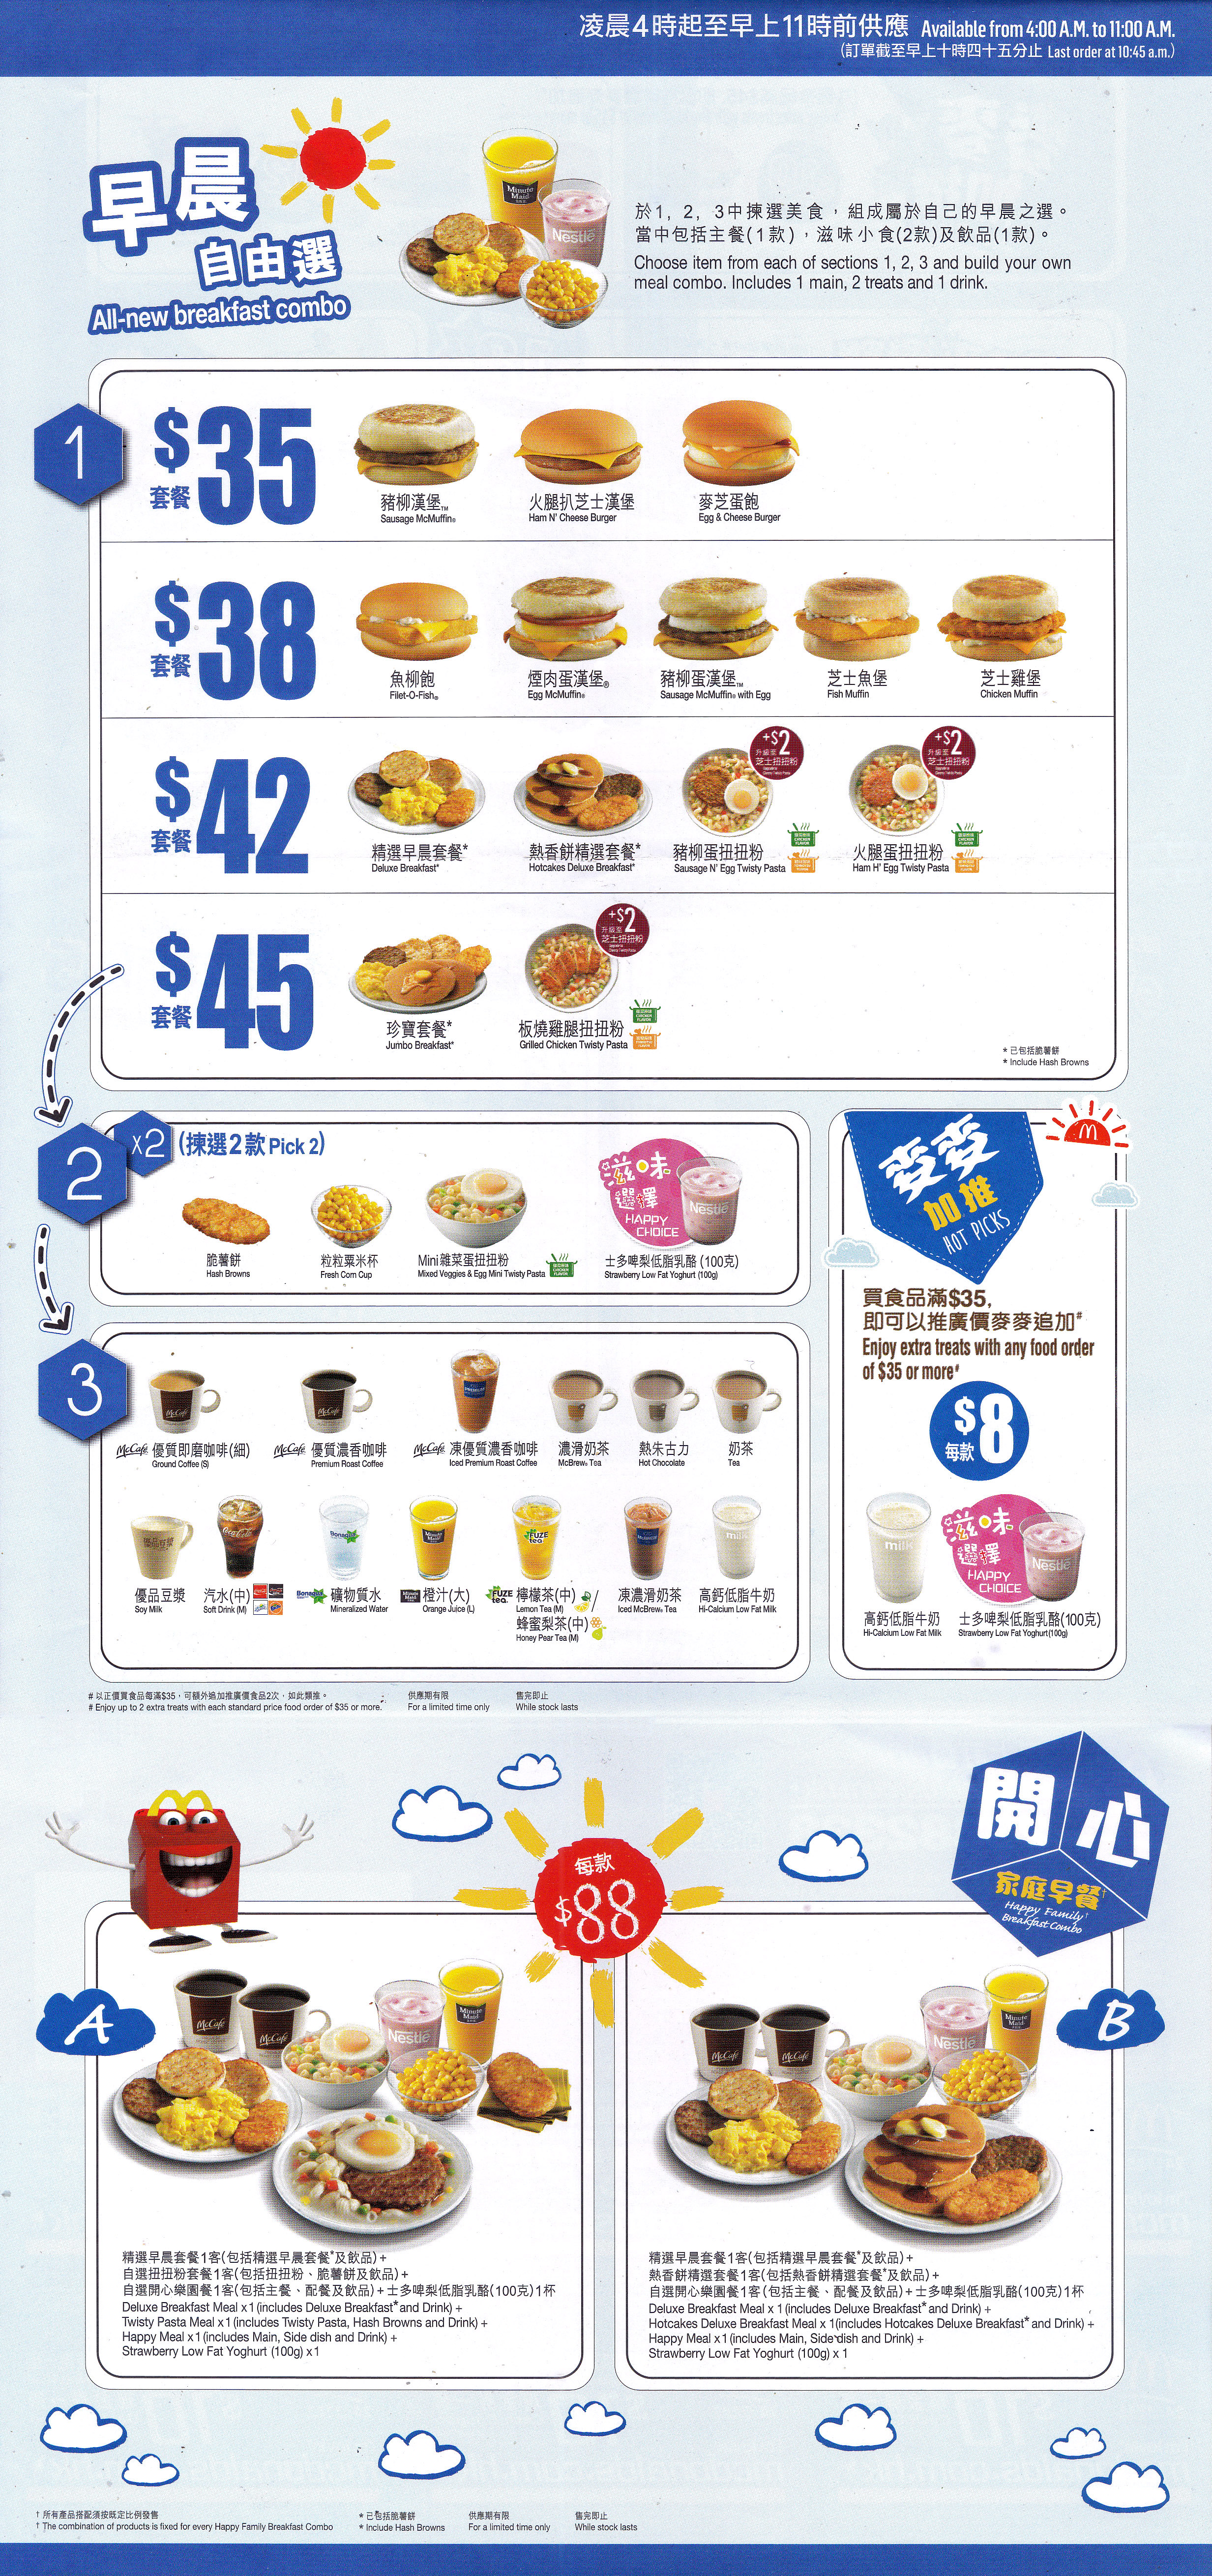 麥當勞24小時麥麥送餐單外賣速遞優惠服務最低消費要幾錢去邊度平哪邊間好介紹 mcdonald's restaurants hong kong ltd mcdelivery service breakfast time menu mcdonald delivery prices